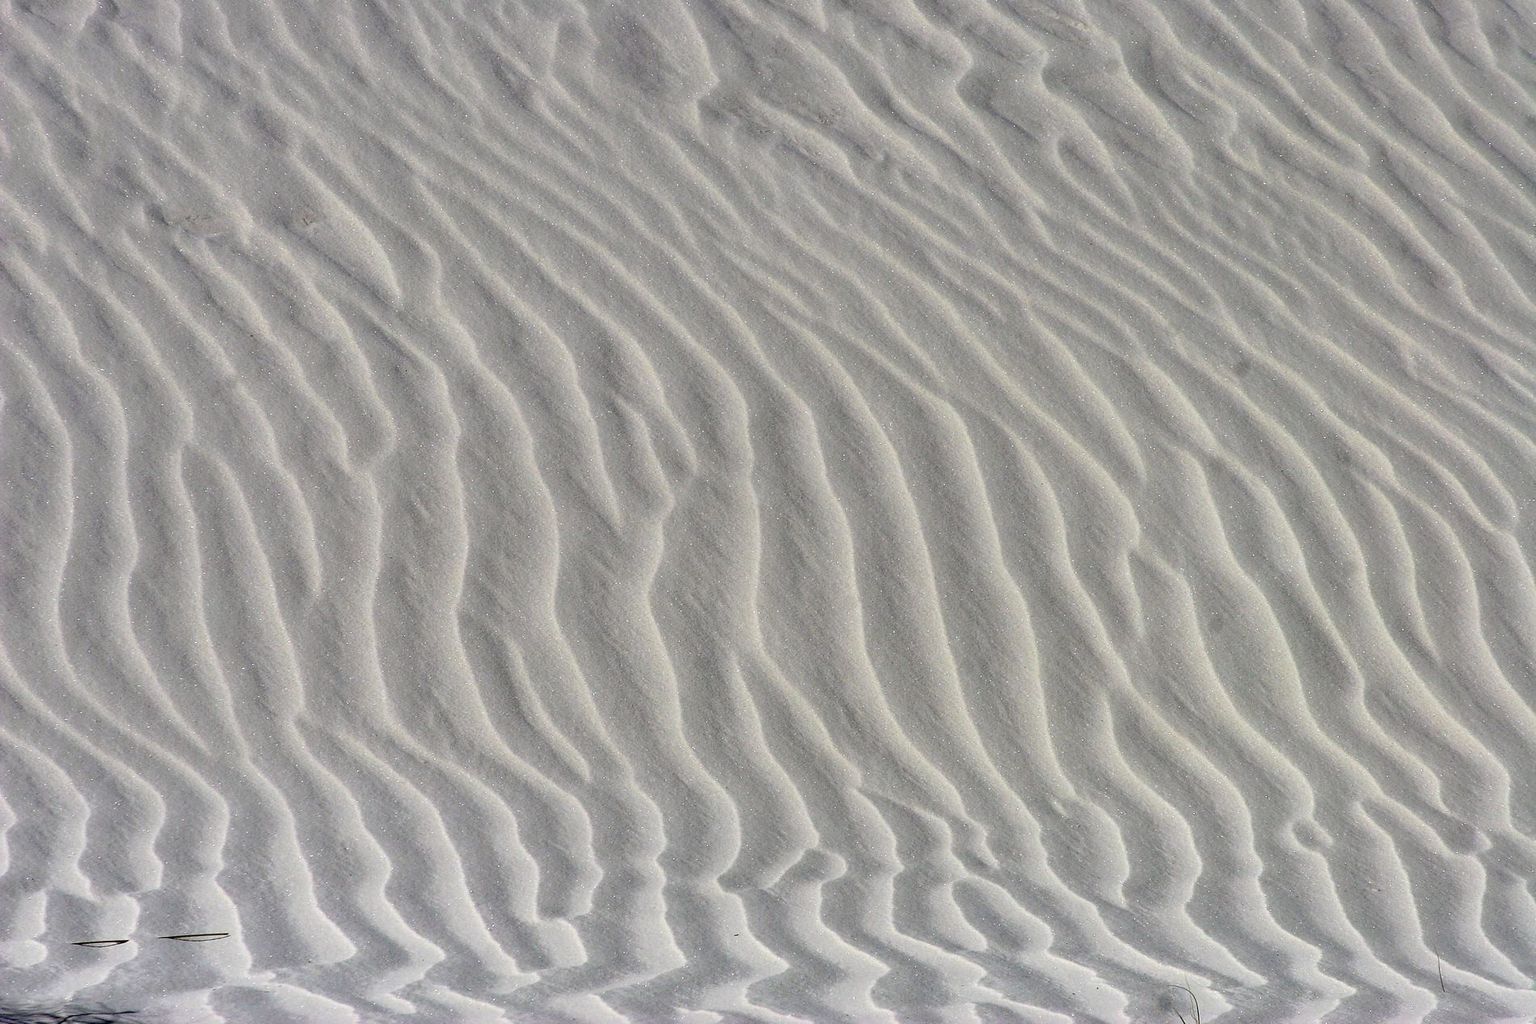 duna arena vento